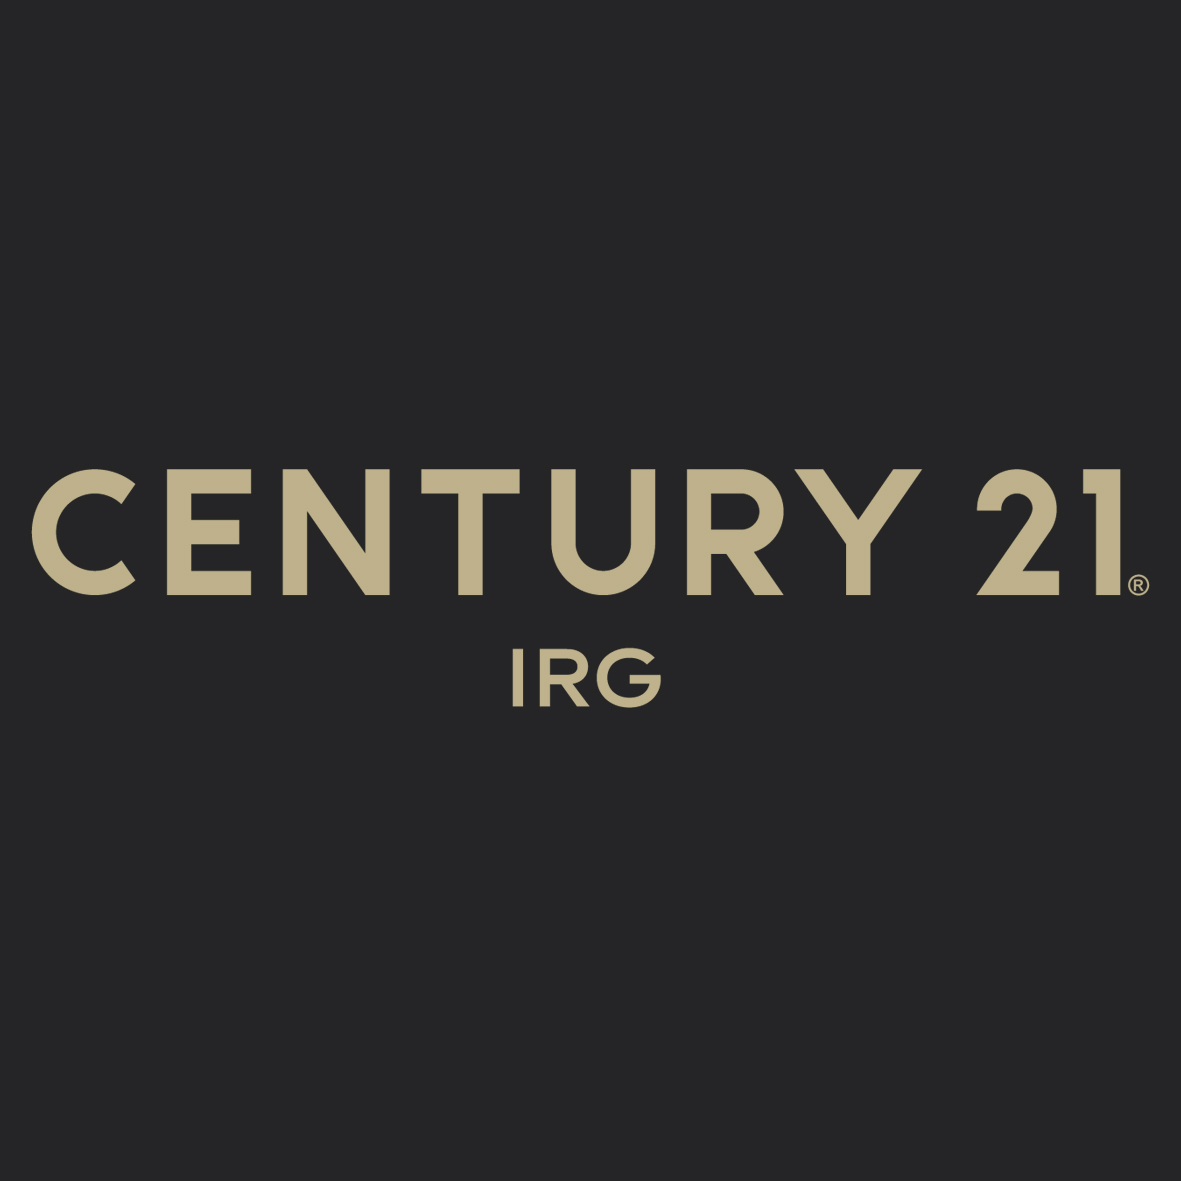 CENTURY 21 IRG